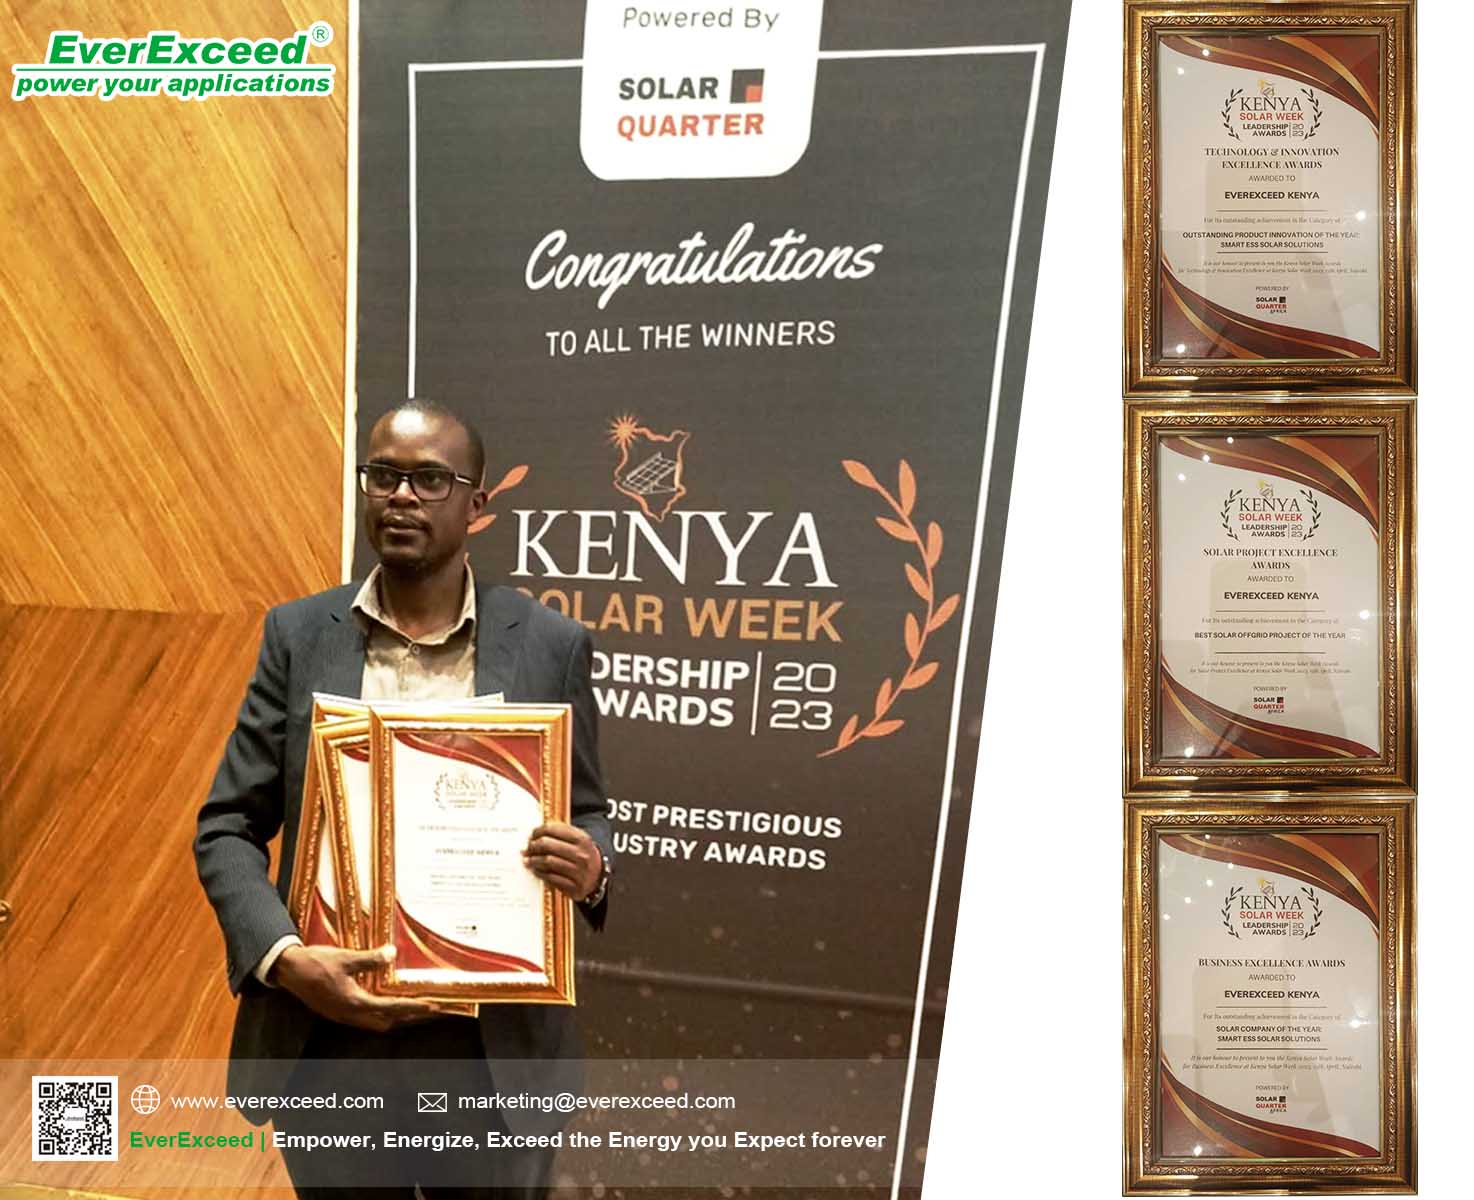 EverExceed肯尼亚đa gianhđược英航giải thưởng xuất sắc tại Tuần lễnăng lượng mặt trời肯尼亚2023年